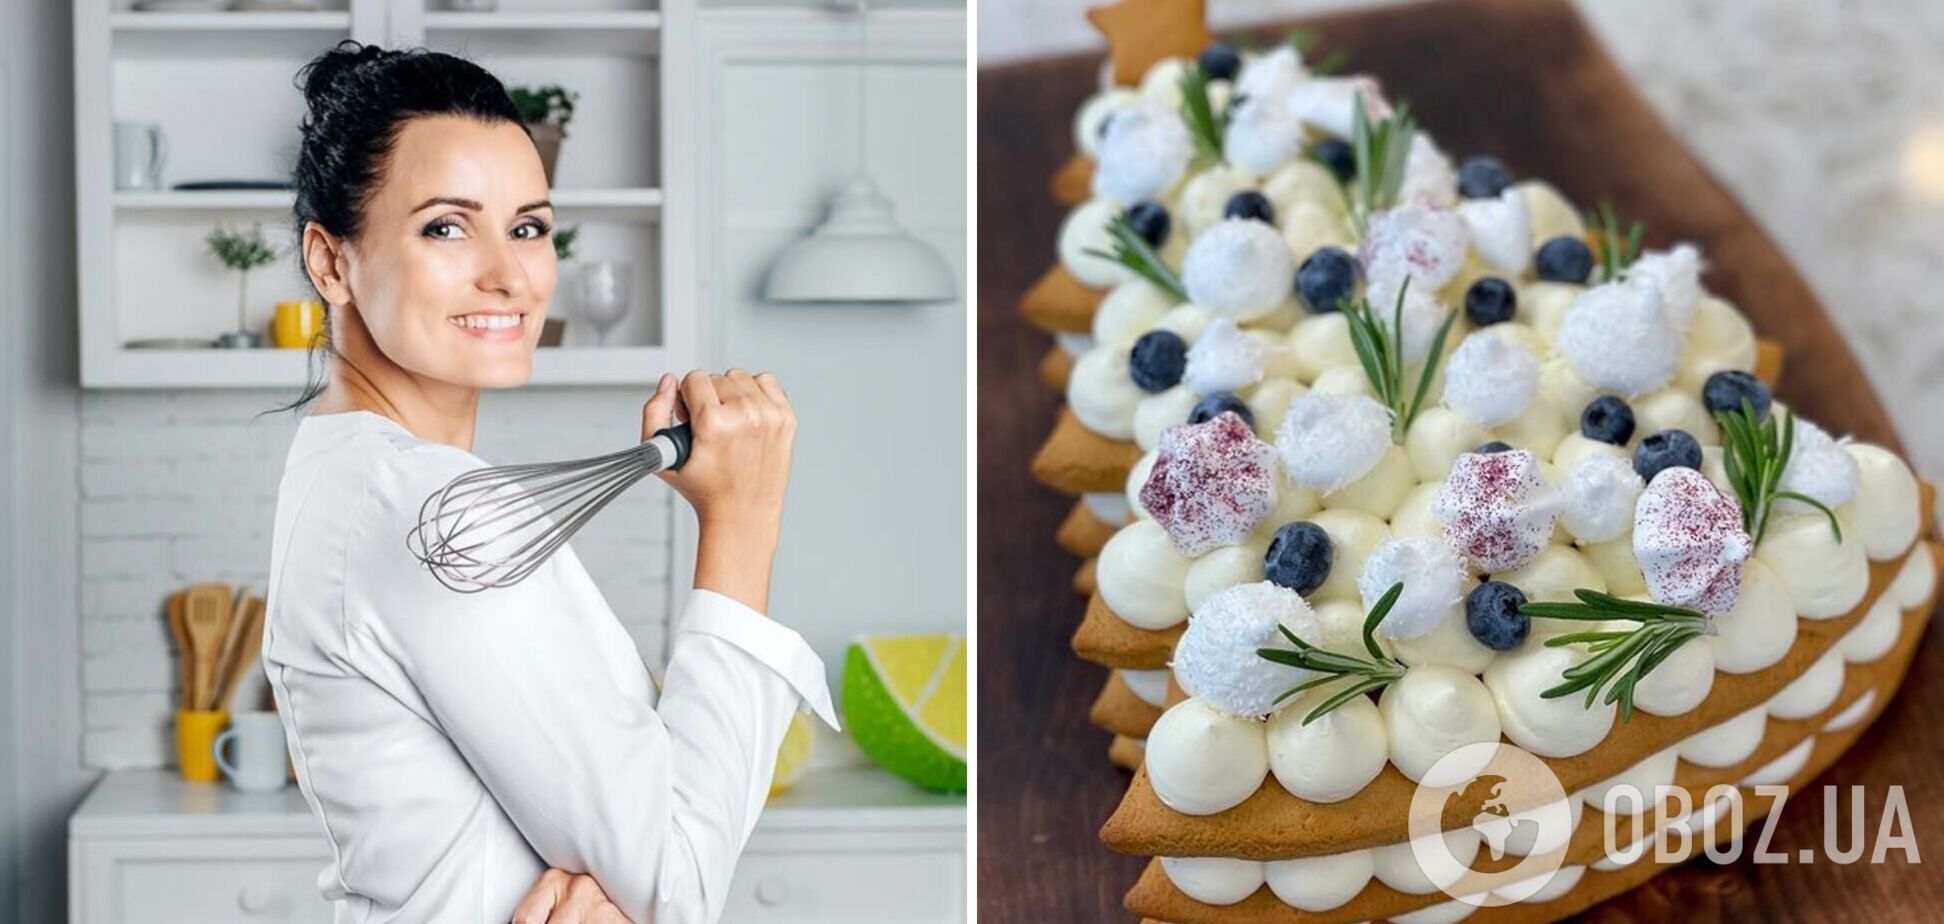 Ідеї приготування десертів від Лізи Глінської, які подарують новорічний настрій: топ-3